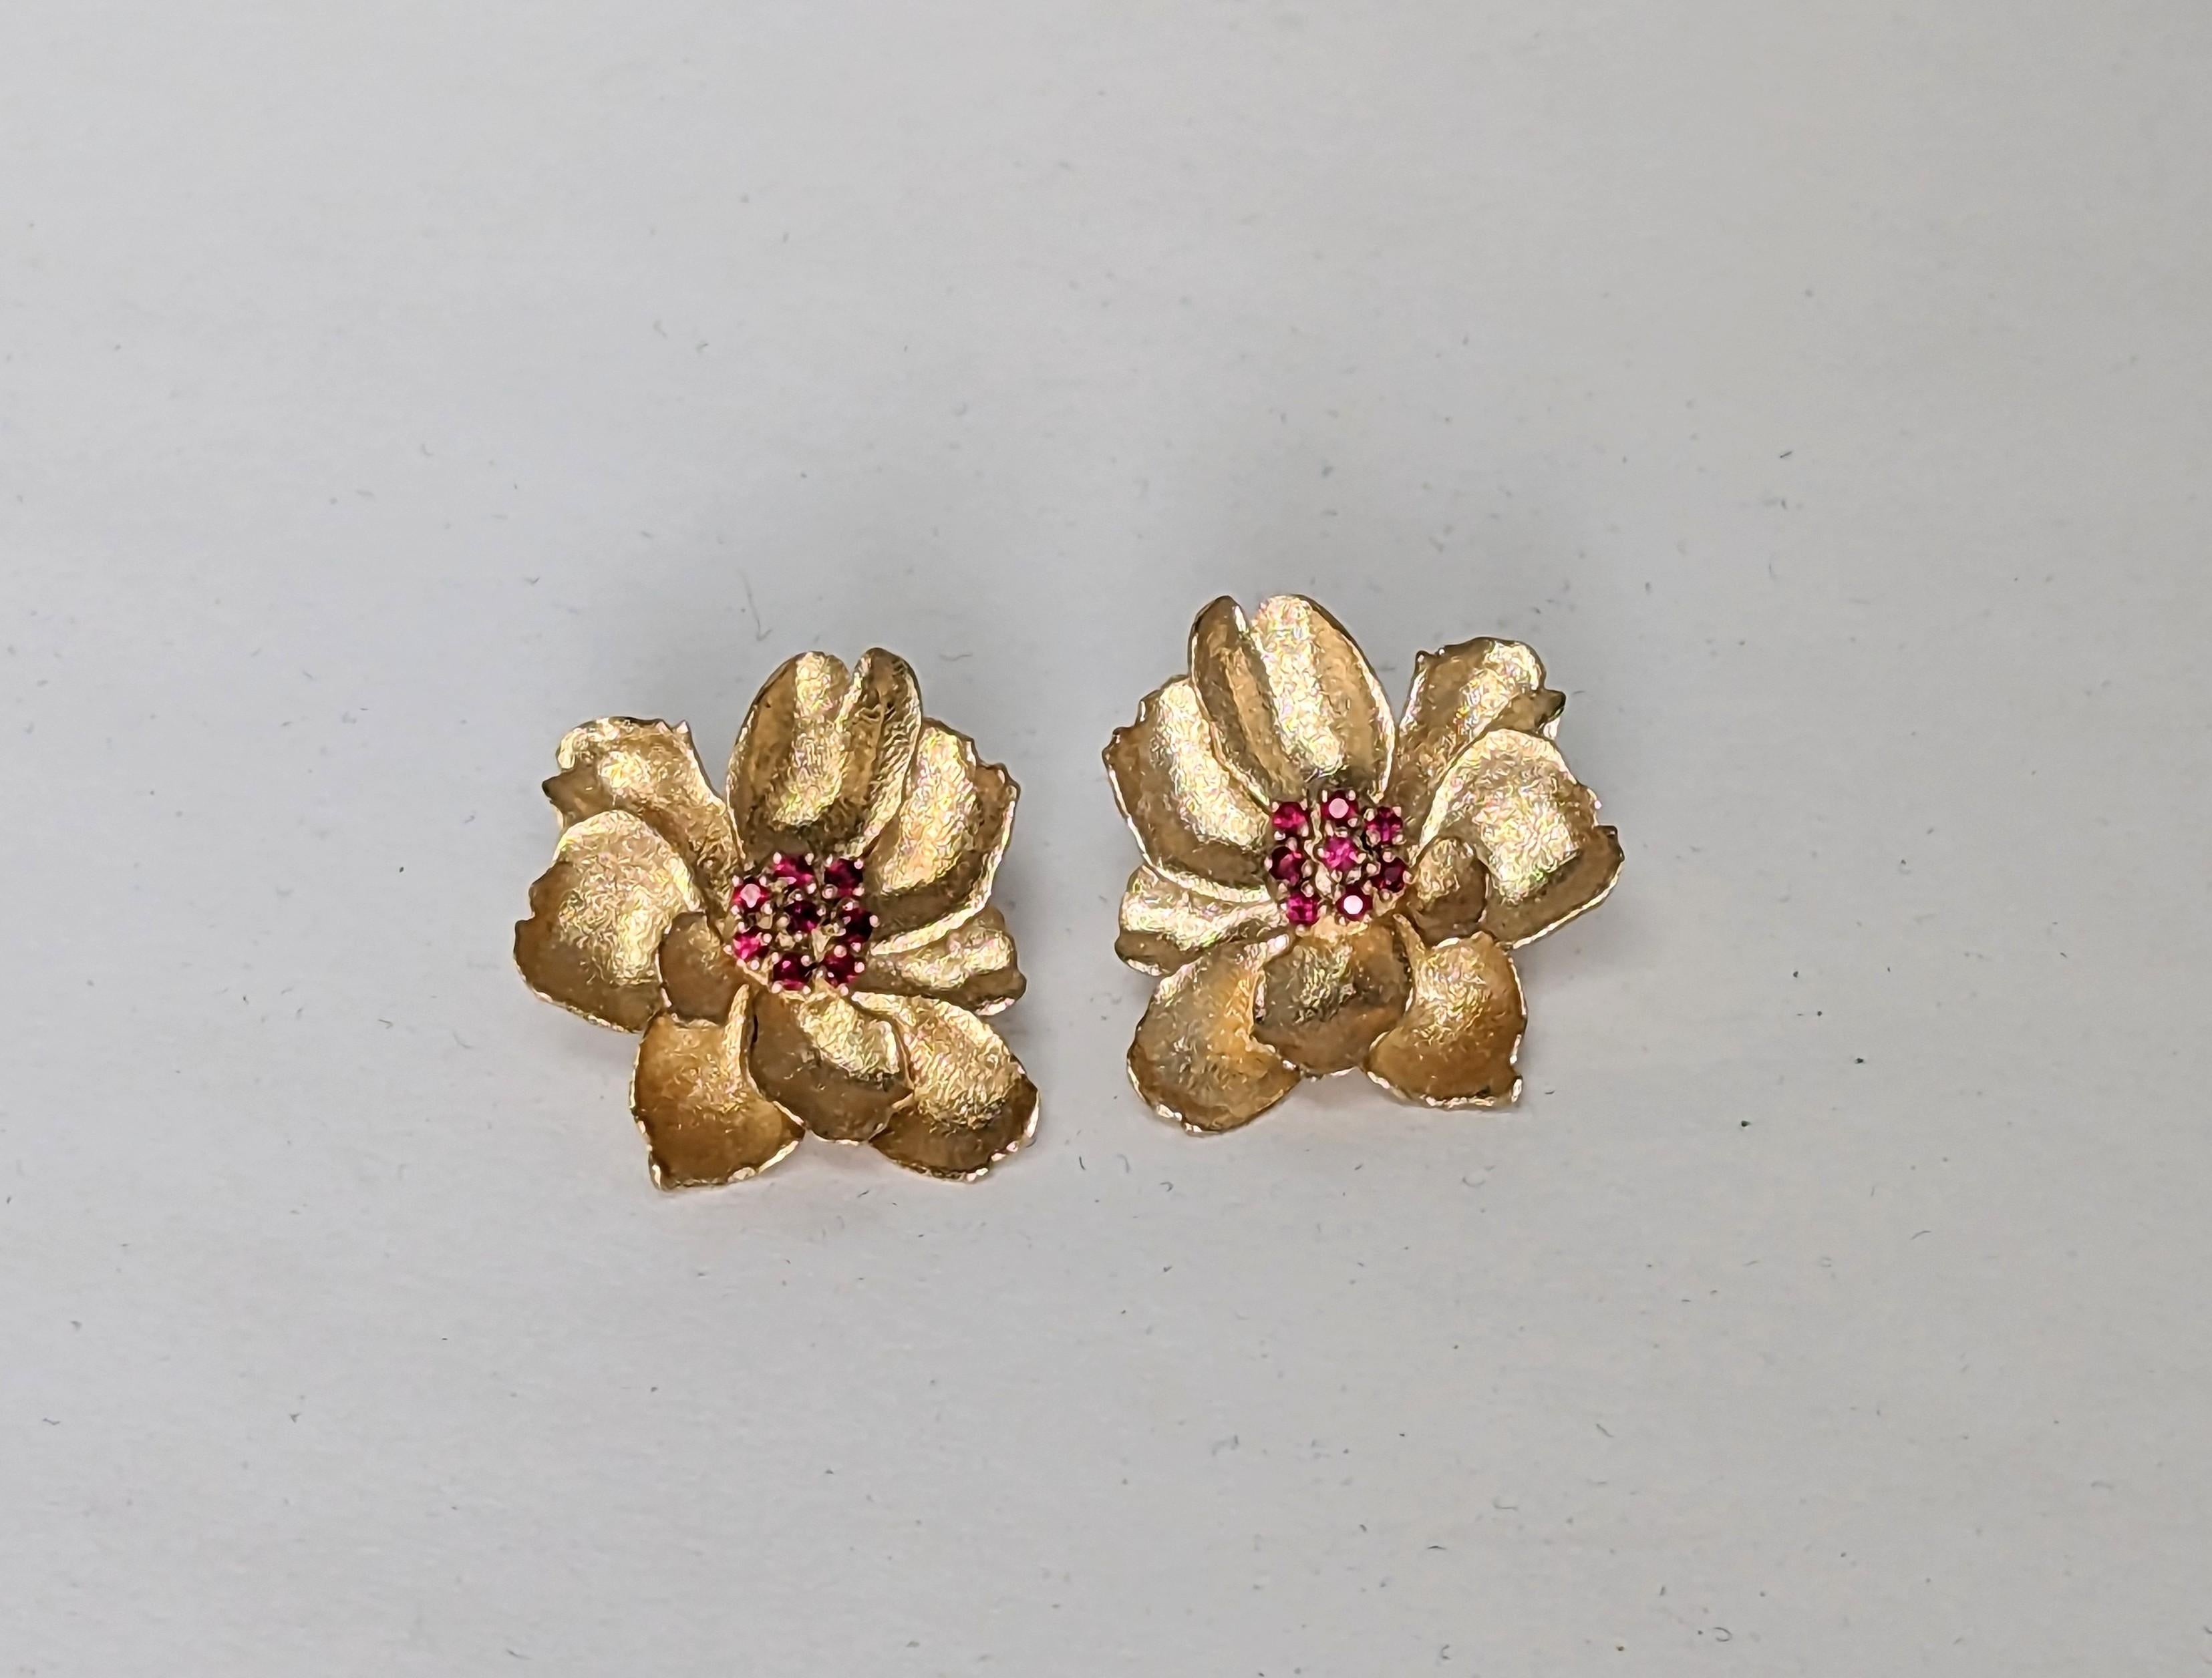 0 Karat White Gold Wild Flower Earrings with Rubies, Tiffany Le designer Thomas Kurilla a sculpté ces boucles exclusivement pour 1stdibs. L'ennui nous pousse à nous remettre en question. Travailler à partir de la vie, en particulier pendant la